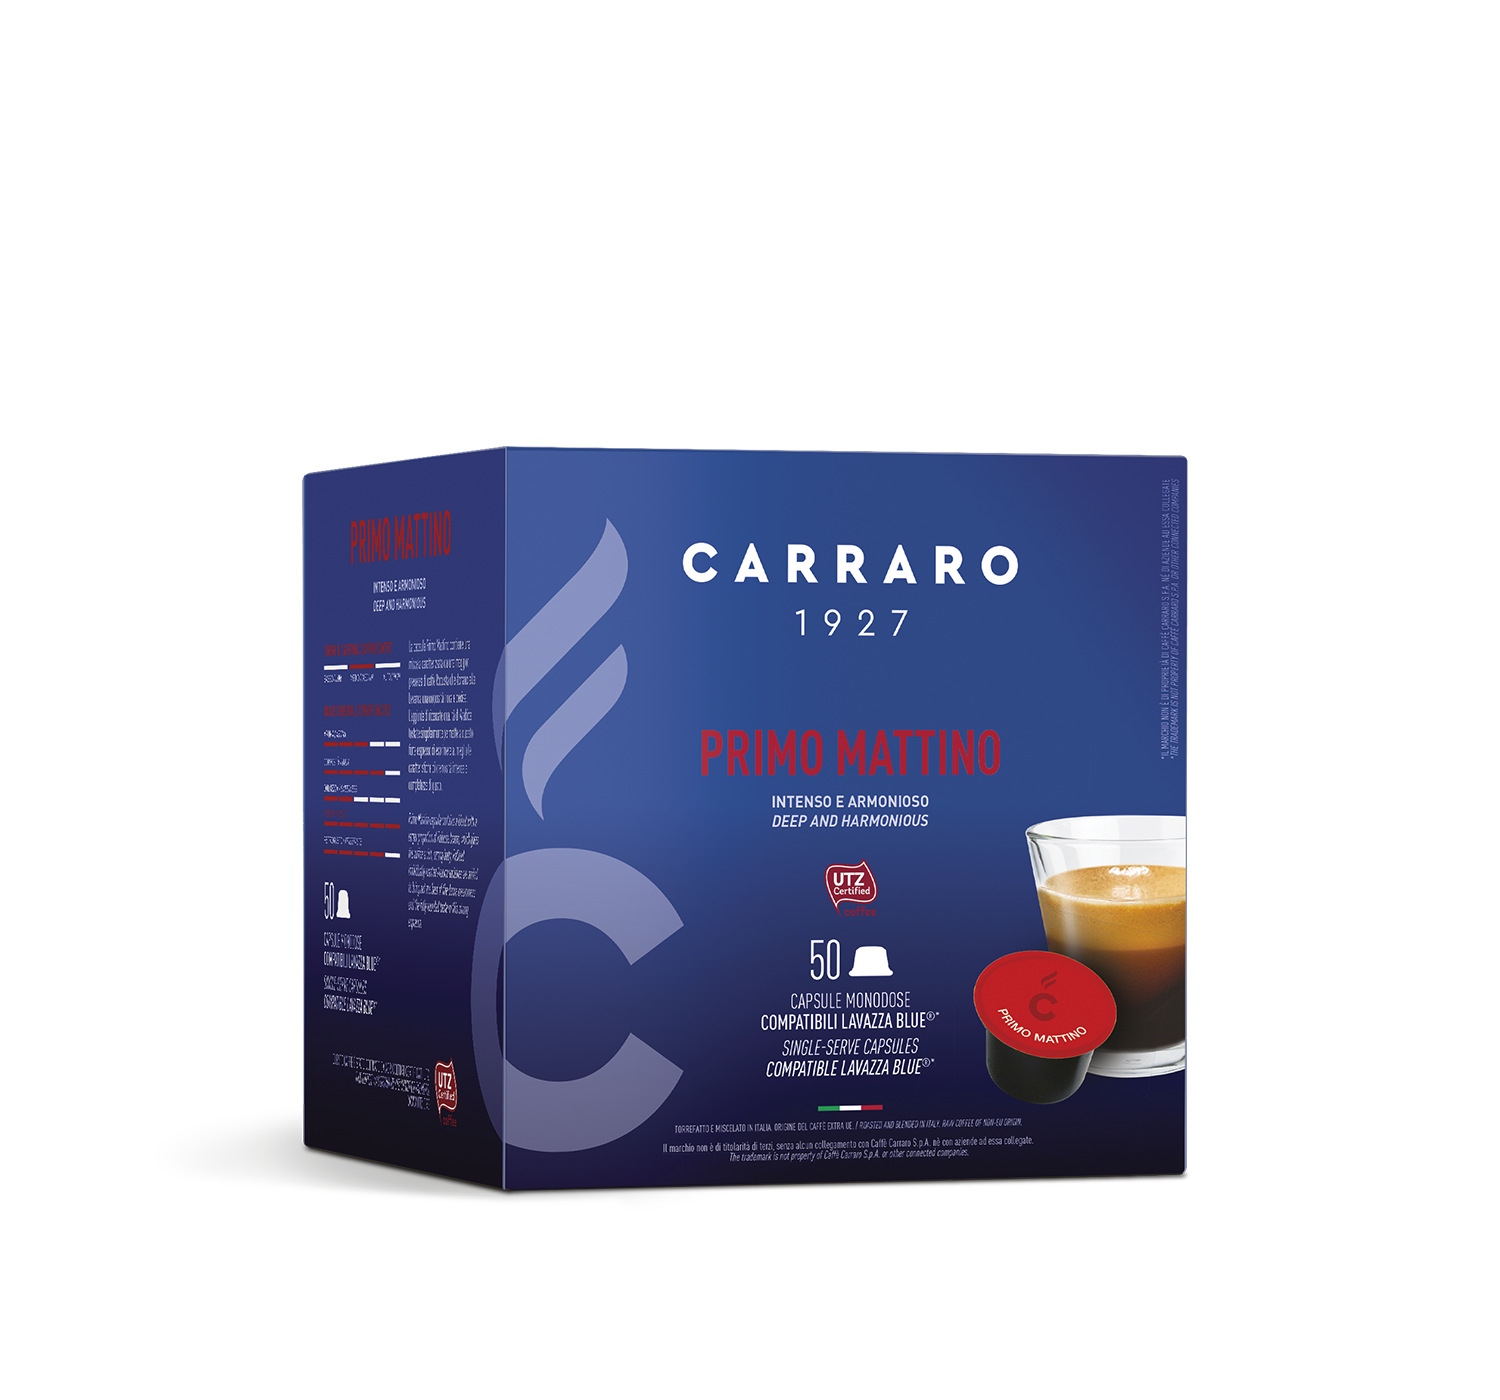 Capsule - Primo Mattino – 50 capsule compatibili Lavazza Blue®* - Shop online Caffè Carraro